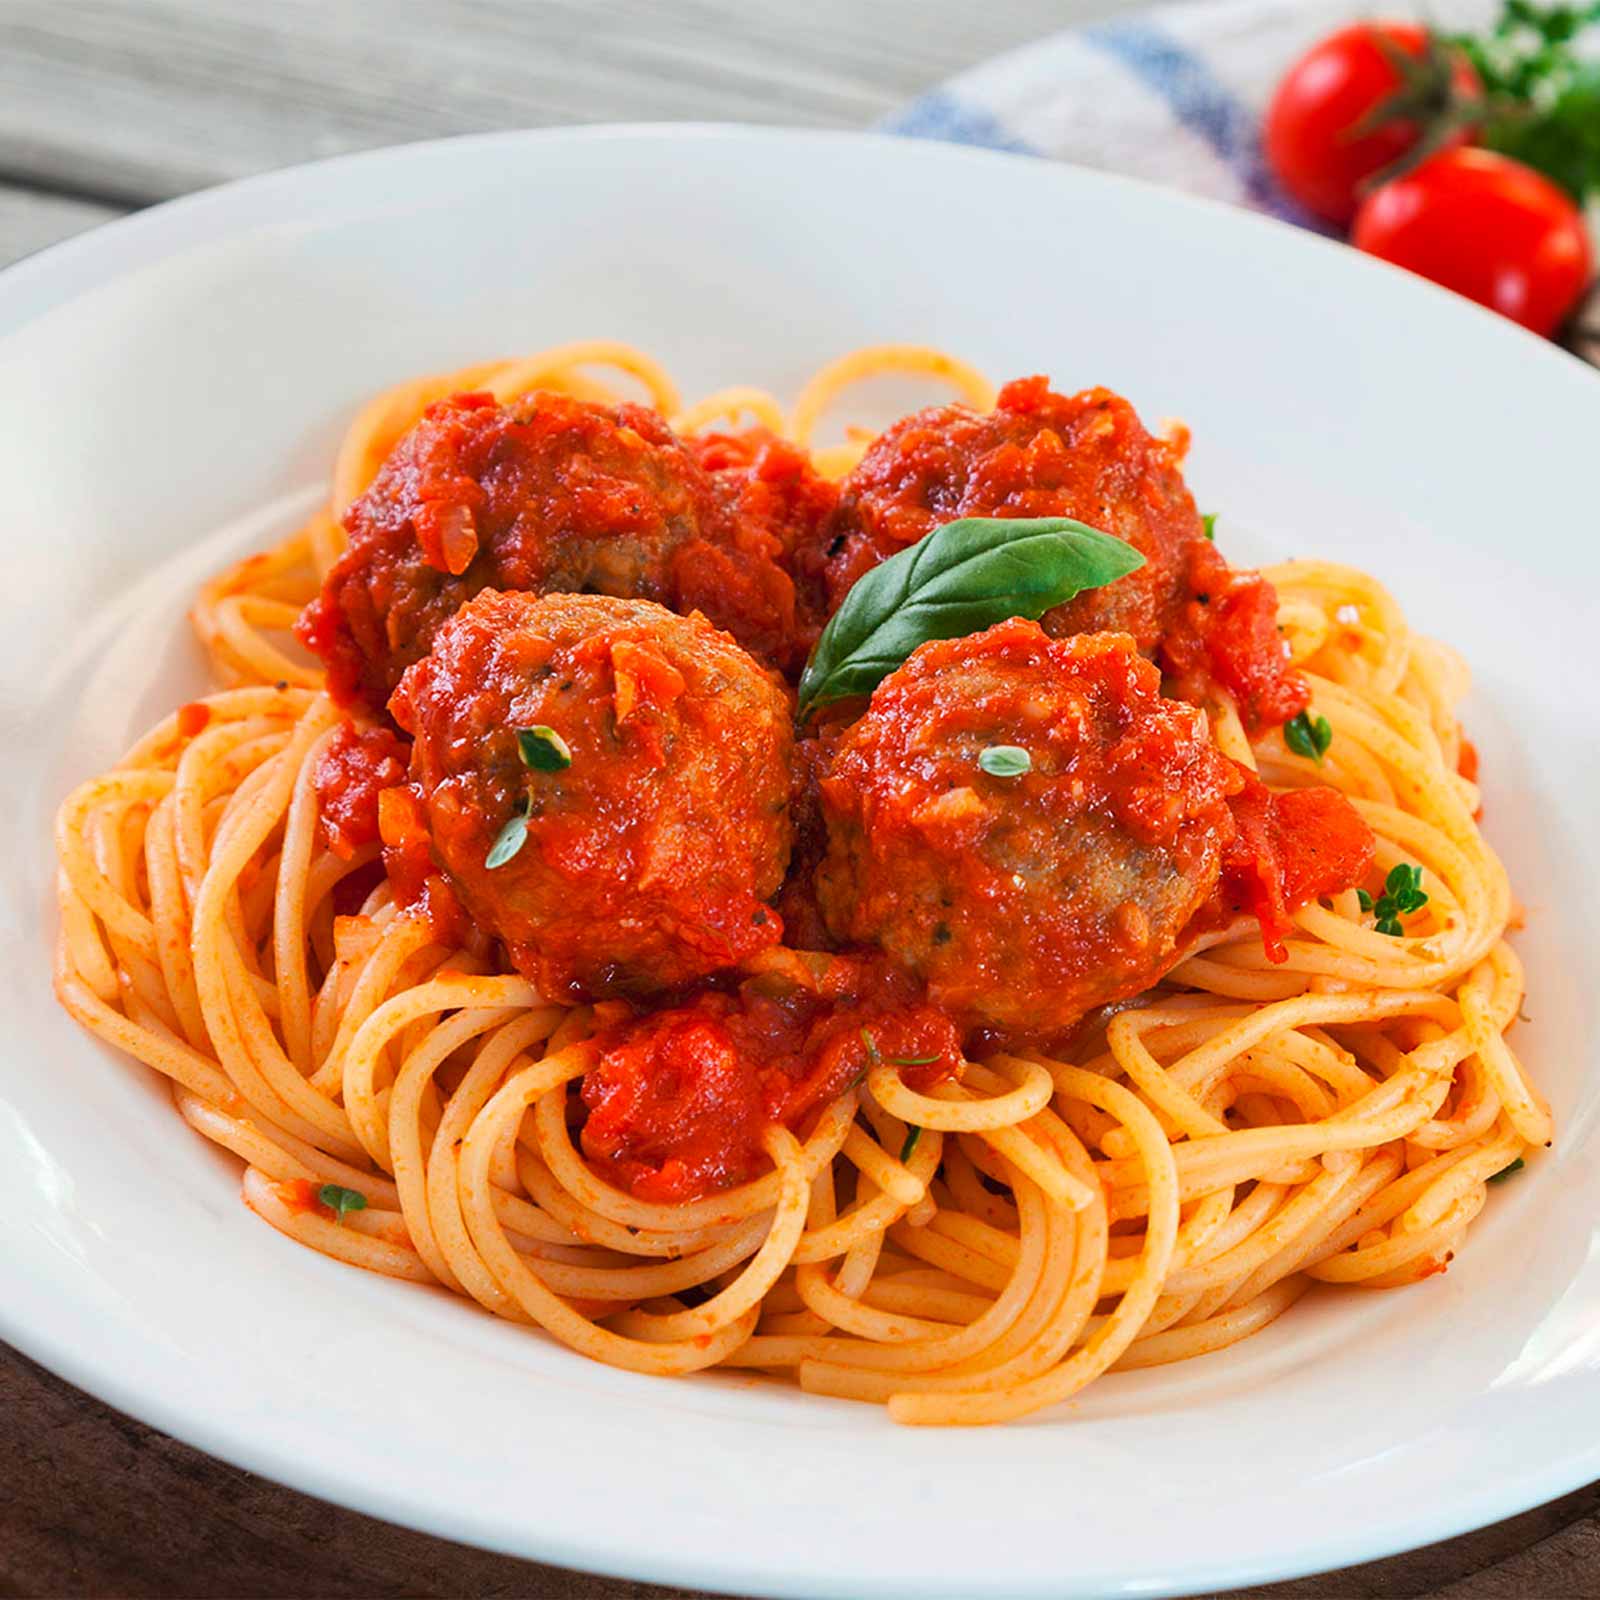 Spaghetti aux boulettes de boeuf : recette facile et rapide Un jour, une  recette